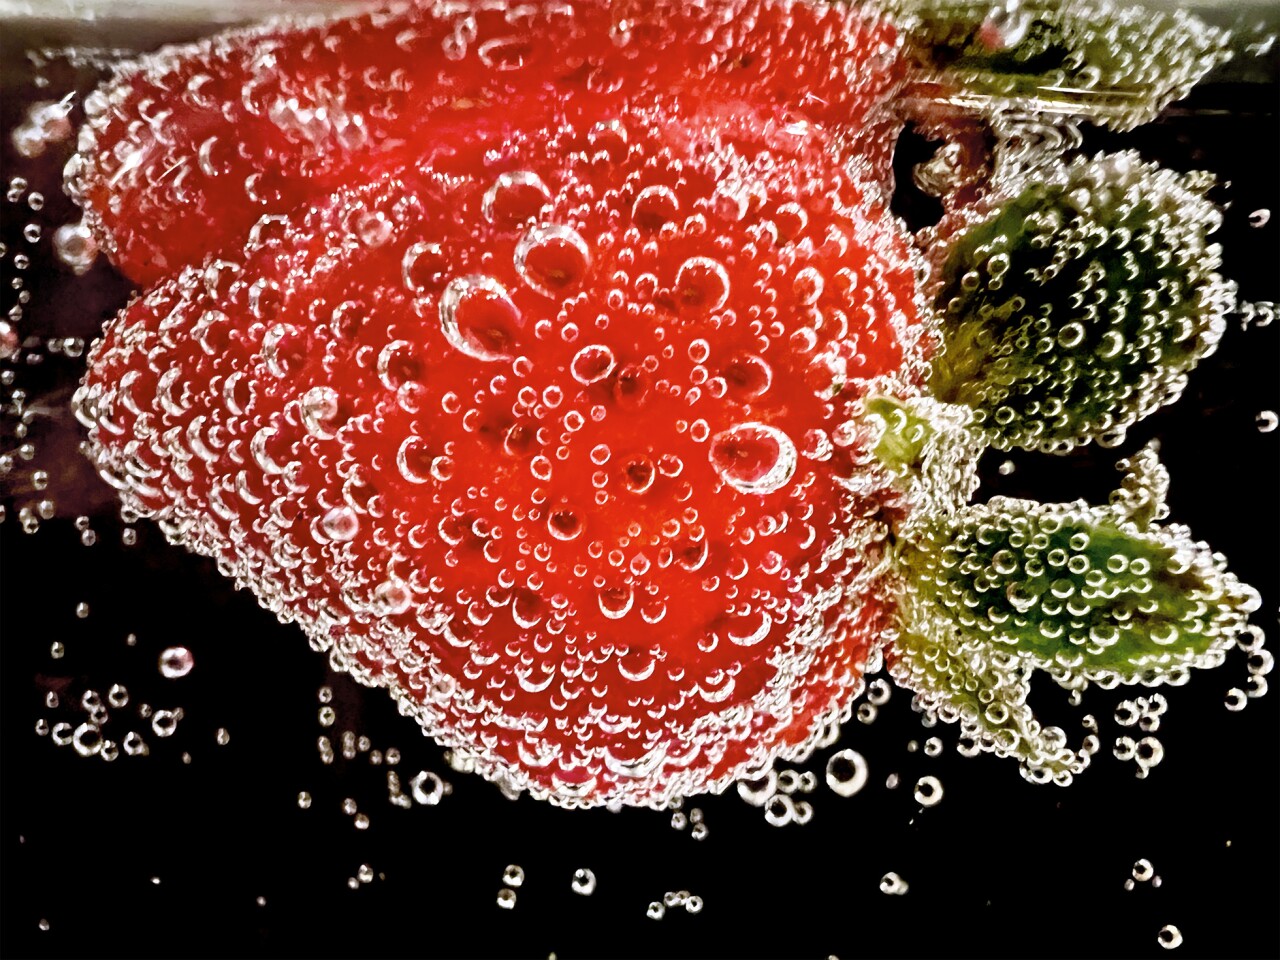 “Strawberry in Soda” by Ashley Lee, San Francisco, USA